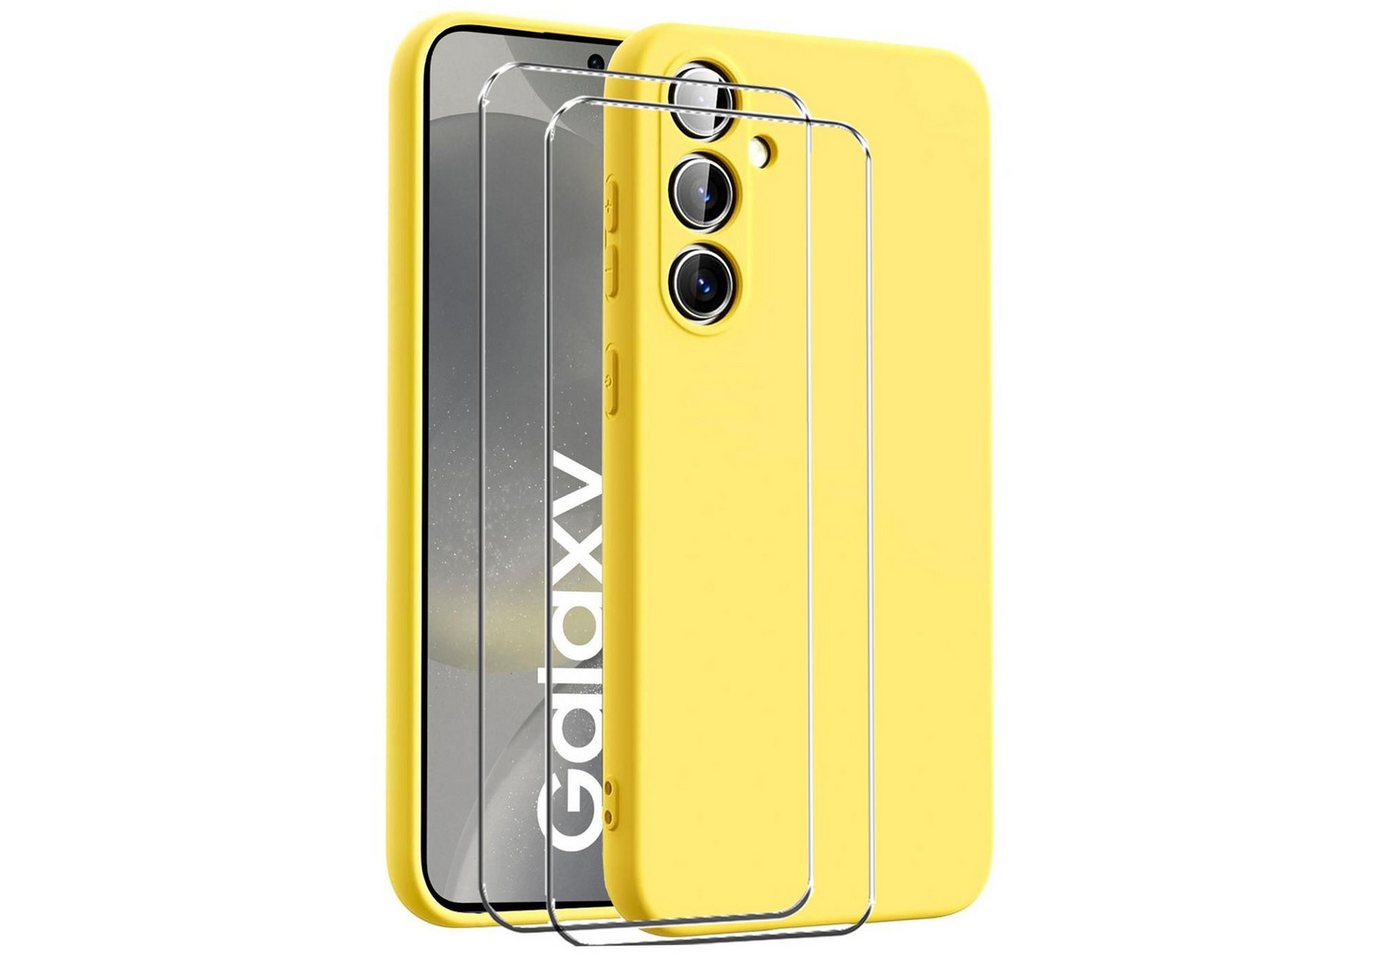 CoolGadget Handyhülle Gelb als 2in1 Schutz Cover Set für das Samsung Galaxy A50 / A30s 6,4 Zoll, 2x Glas Display Schutz Folie + 1x TPU Case Hülle für Galaxy A50 / A30s von CoolGadget